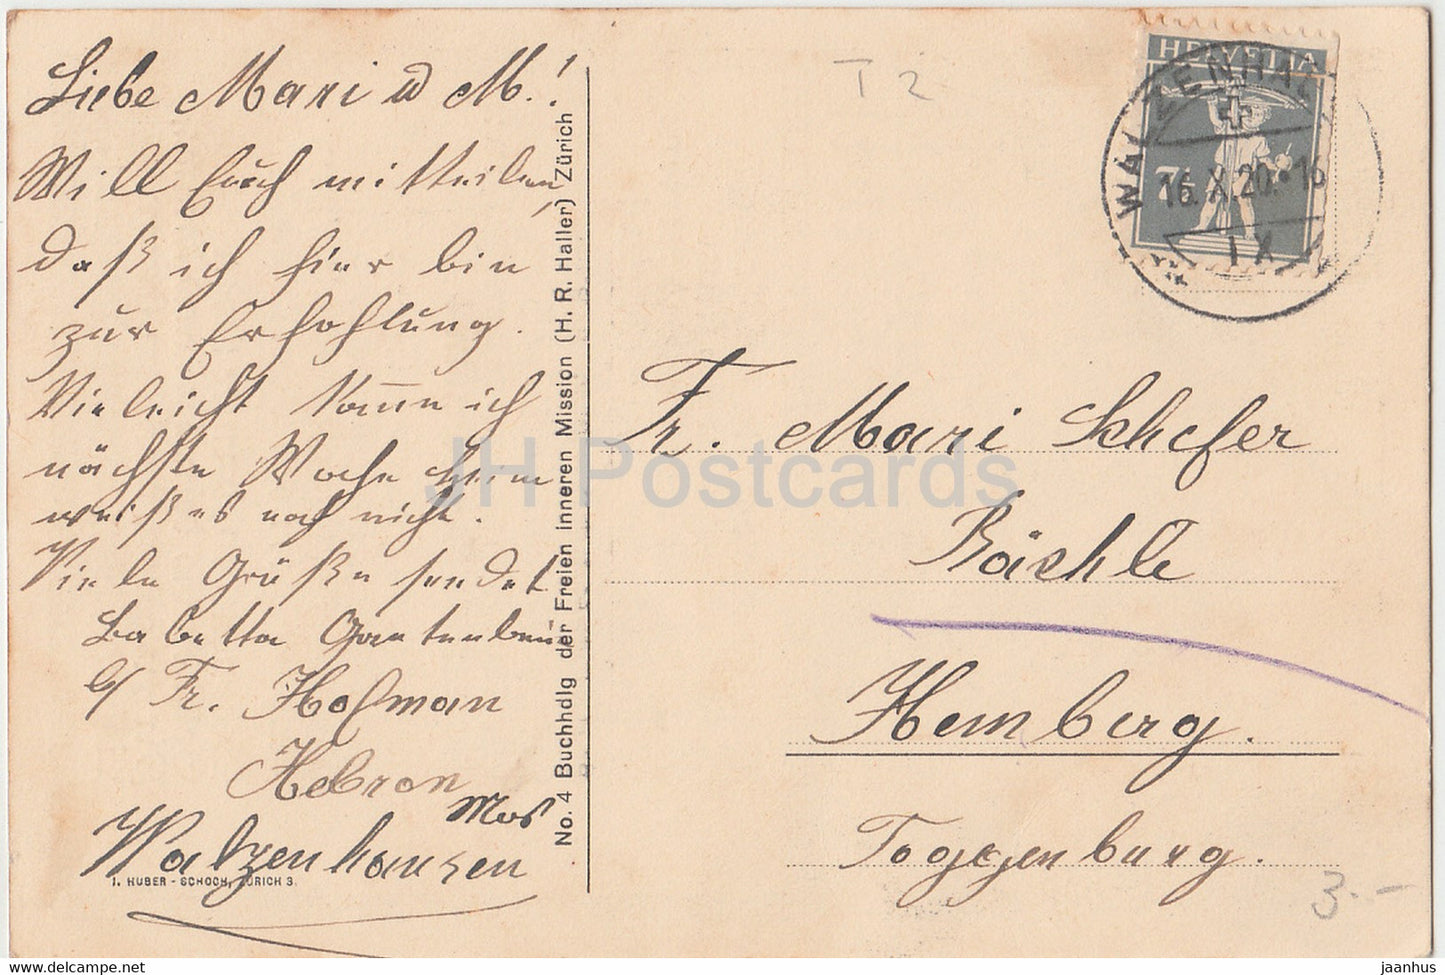 Liebe - Liedtext - alte Postkarte - Schweiz - 1920 - gebraucht